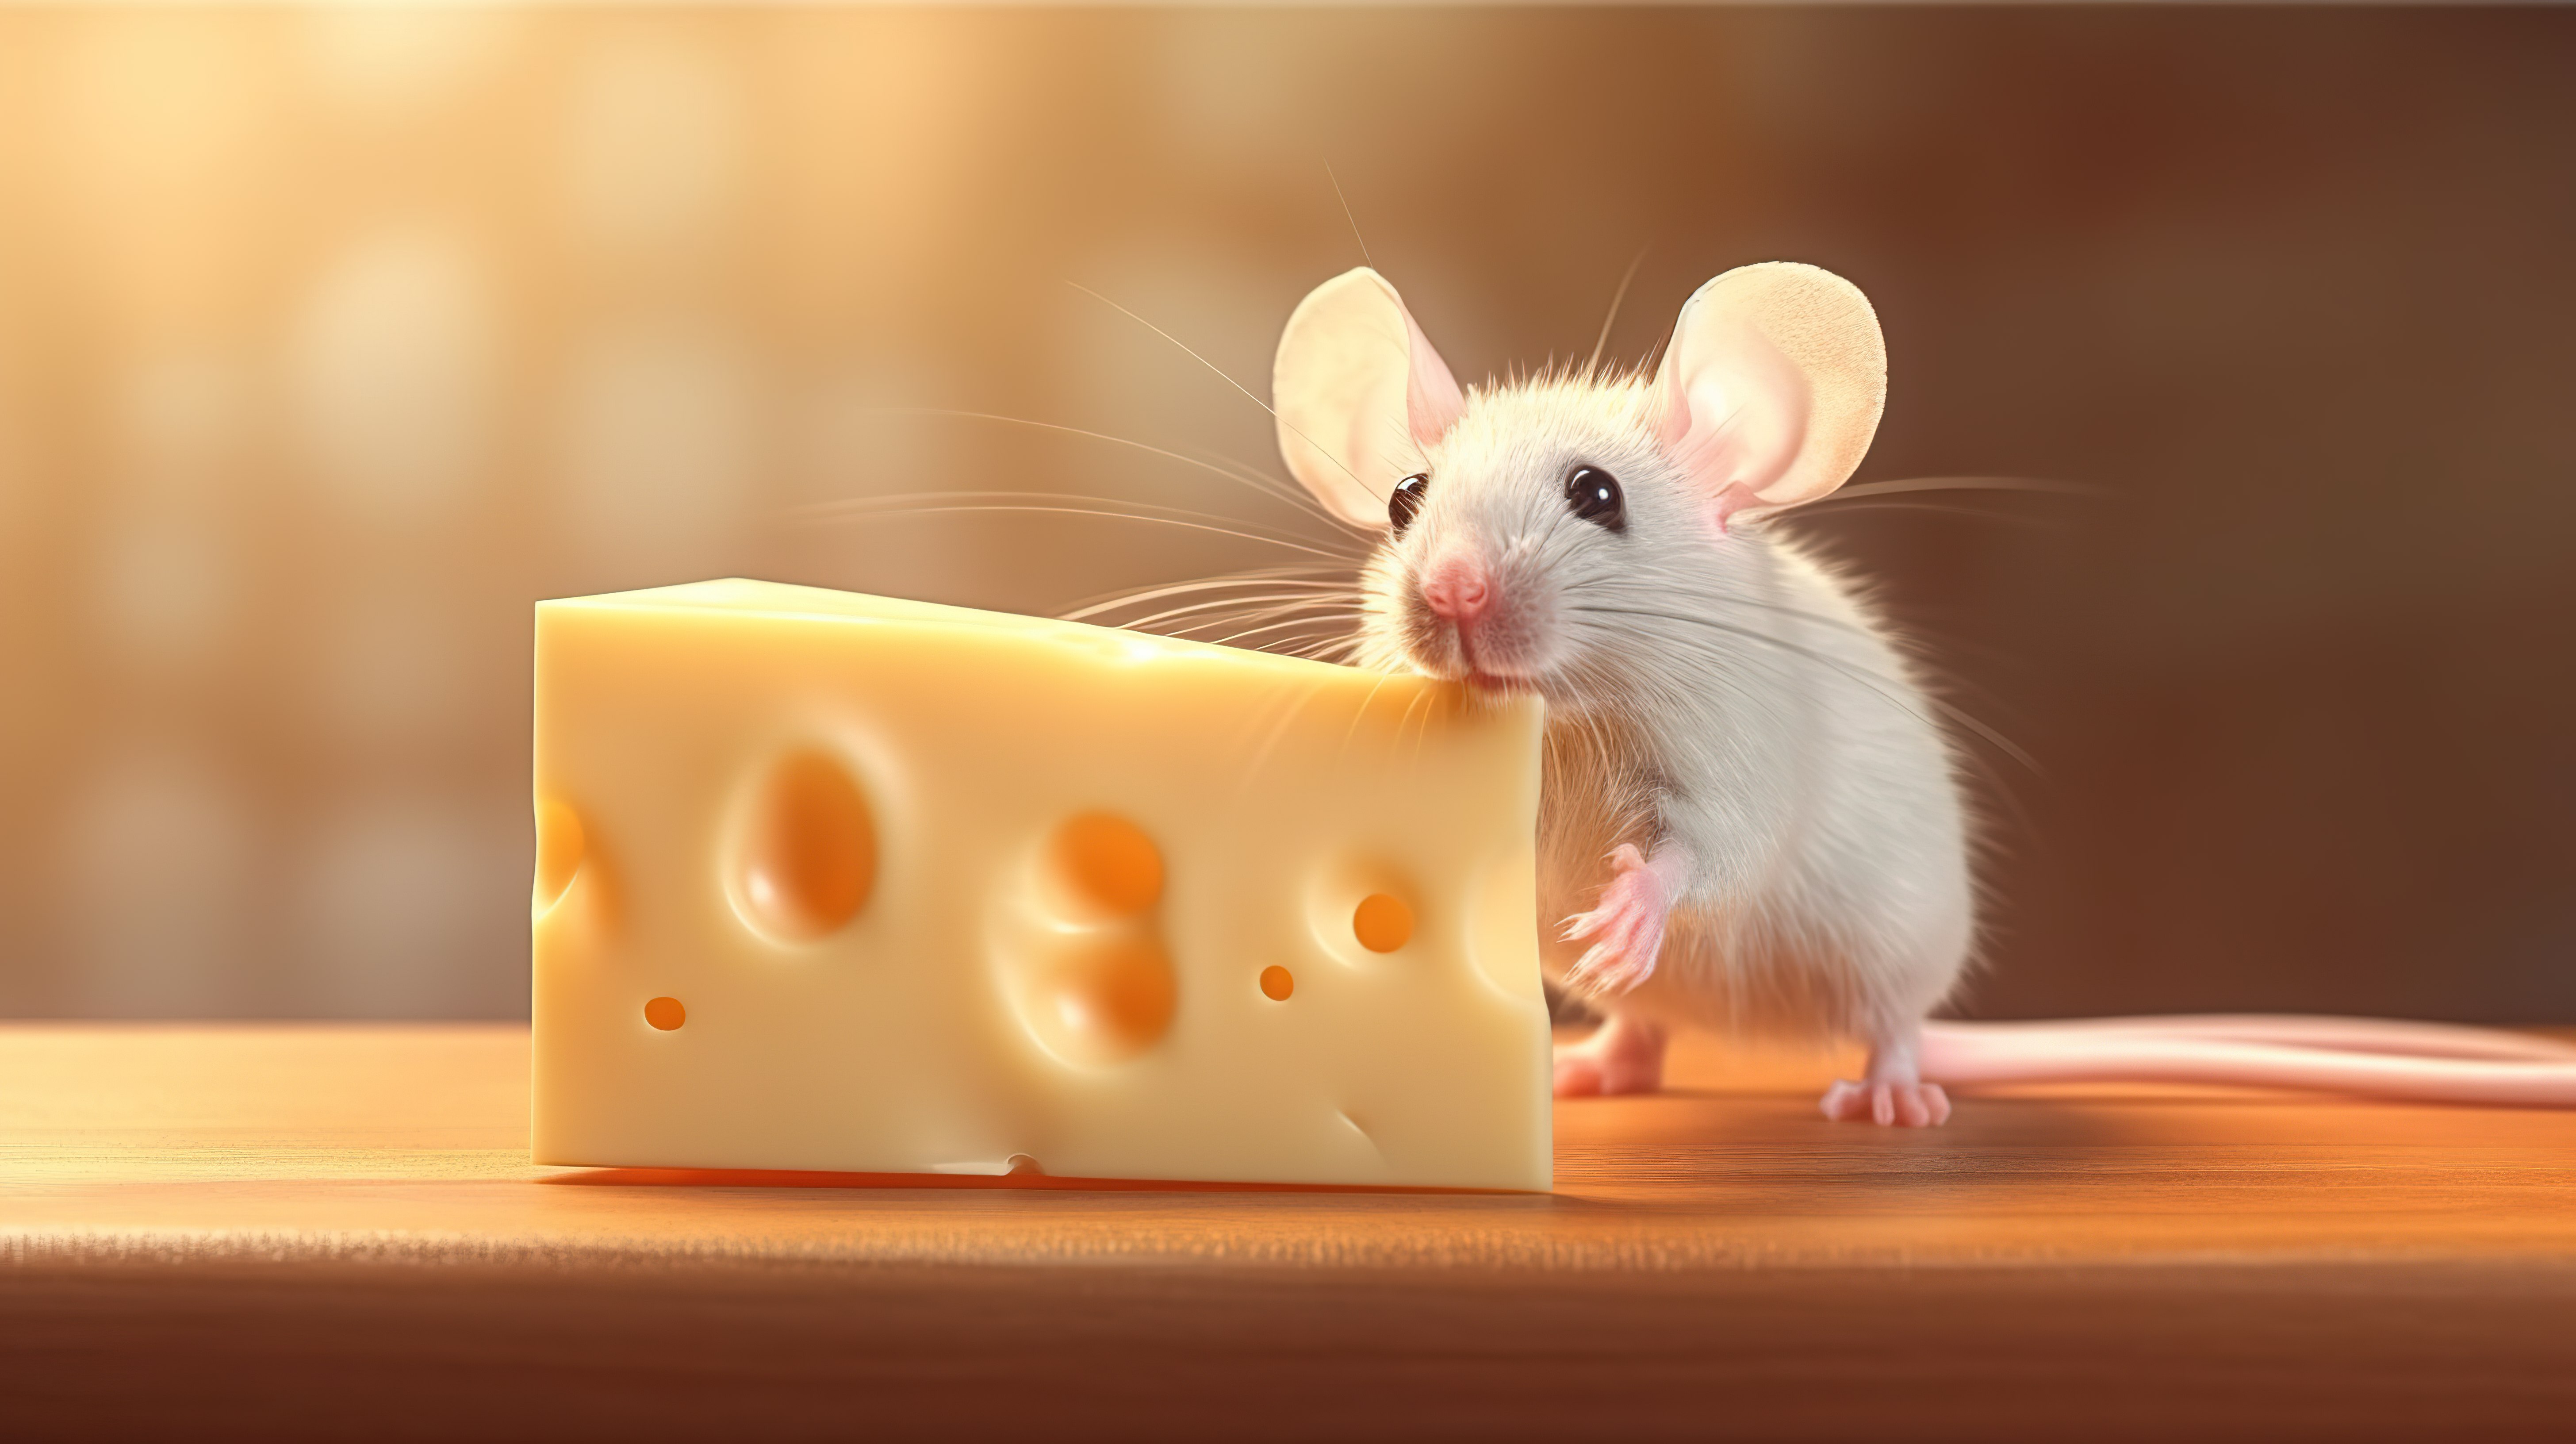 老鼠与奶酪的 3D 插图 3图片